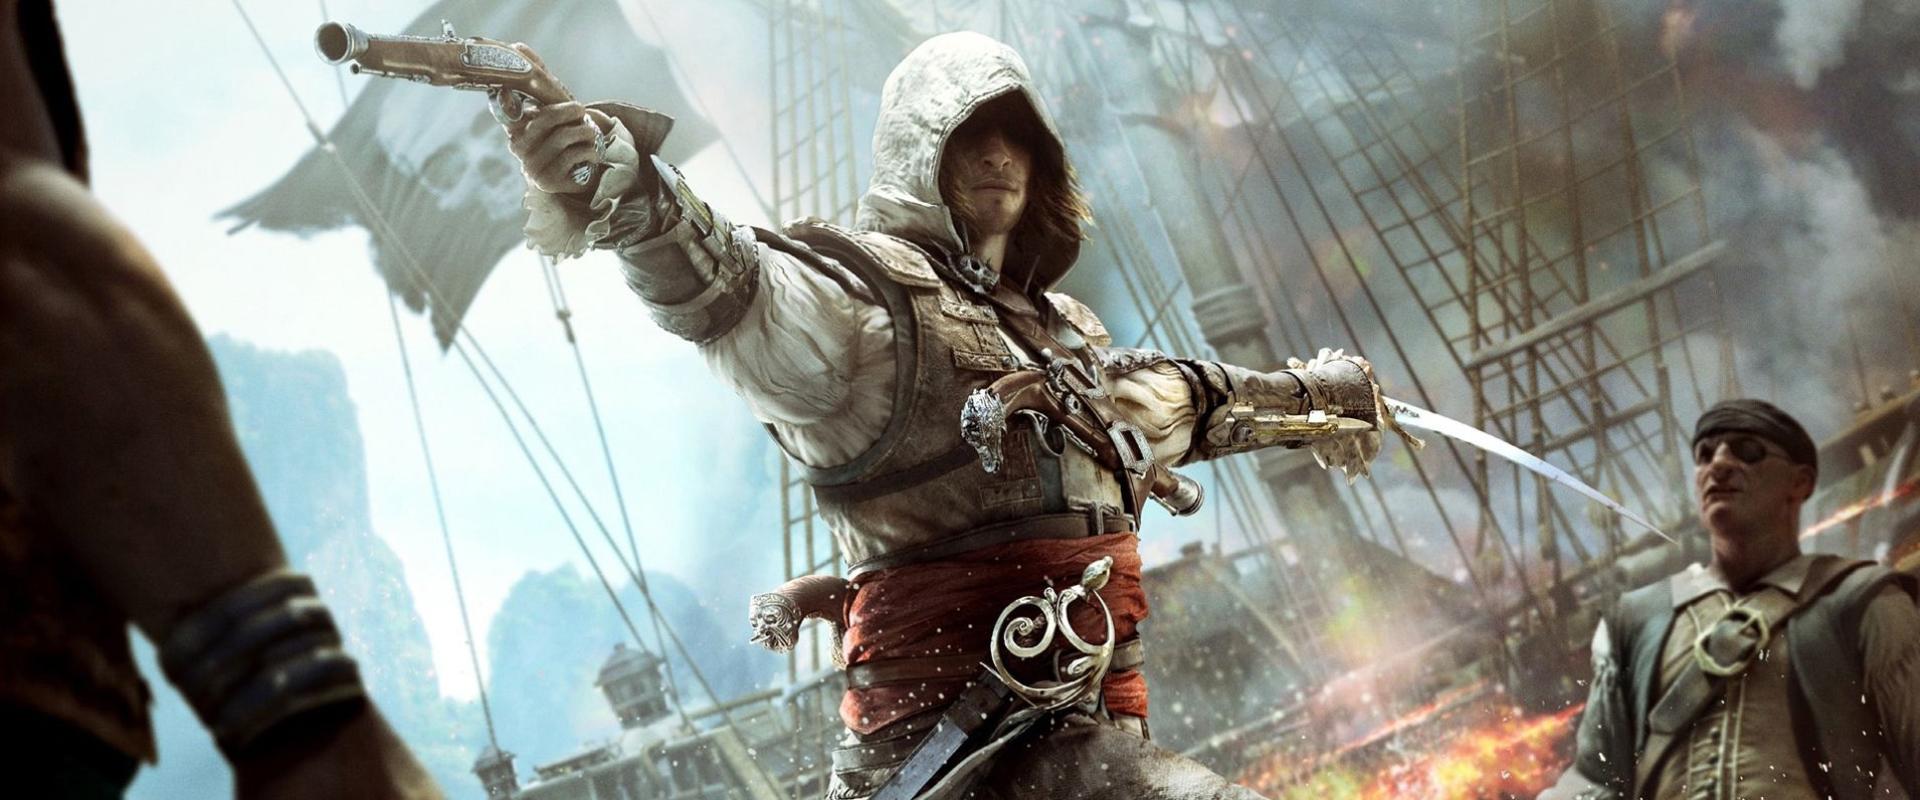 Nagyot nőtt az Assassin's Creed IV: Black Flag népszerűsége, hála a Skull and Bonesnak